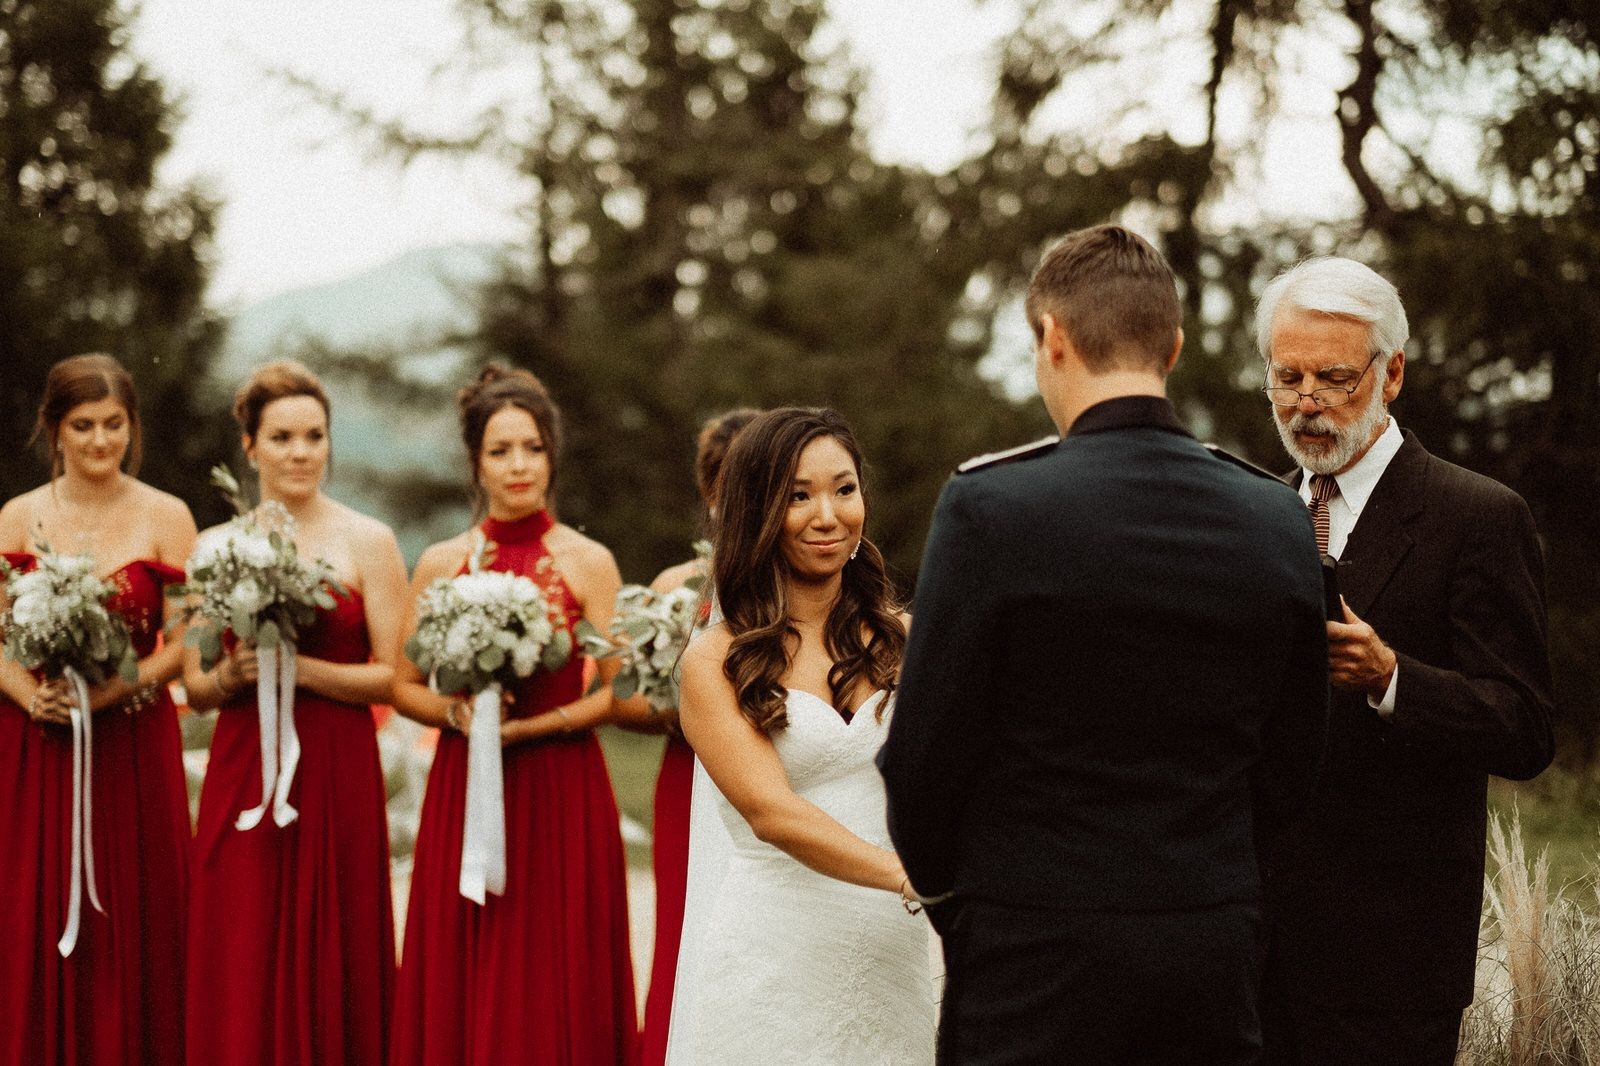 Ceremony Gallery - Wedding in the Dolomites, Colfosco, Italy - Italian Apls